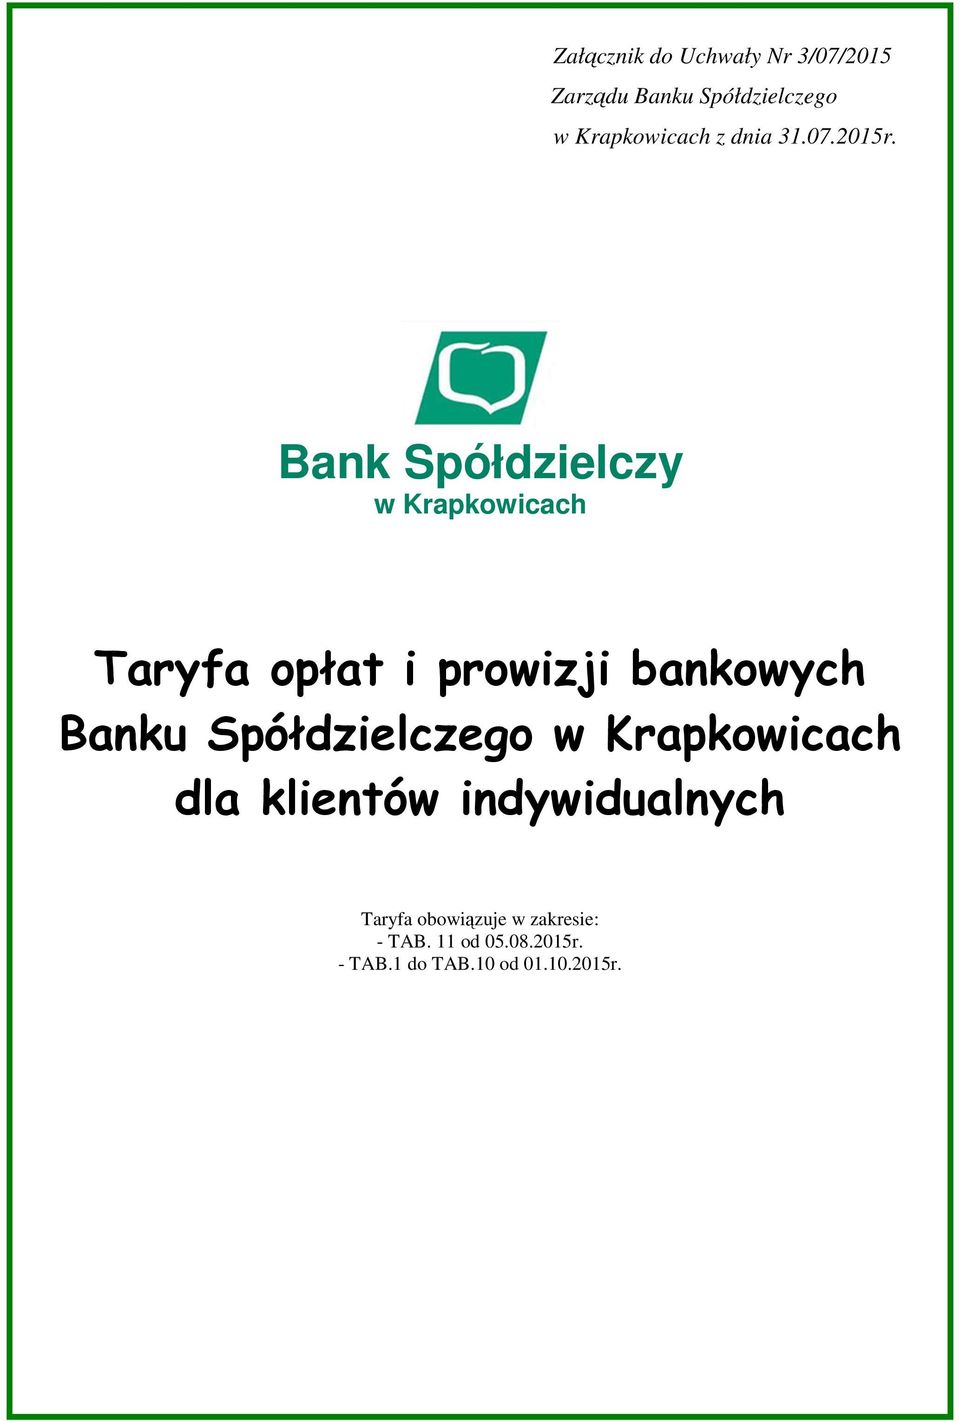 Bank Spółdzielczy w Krapkowicach Taryfa obowiązuje w zakresie: -